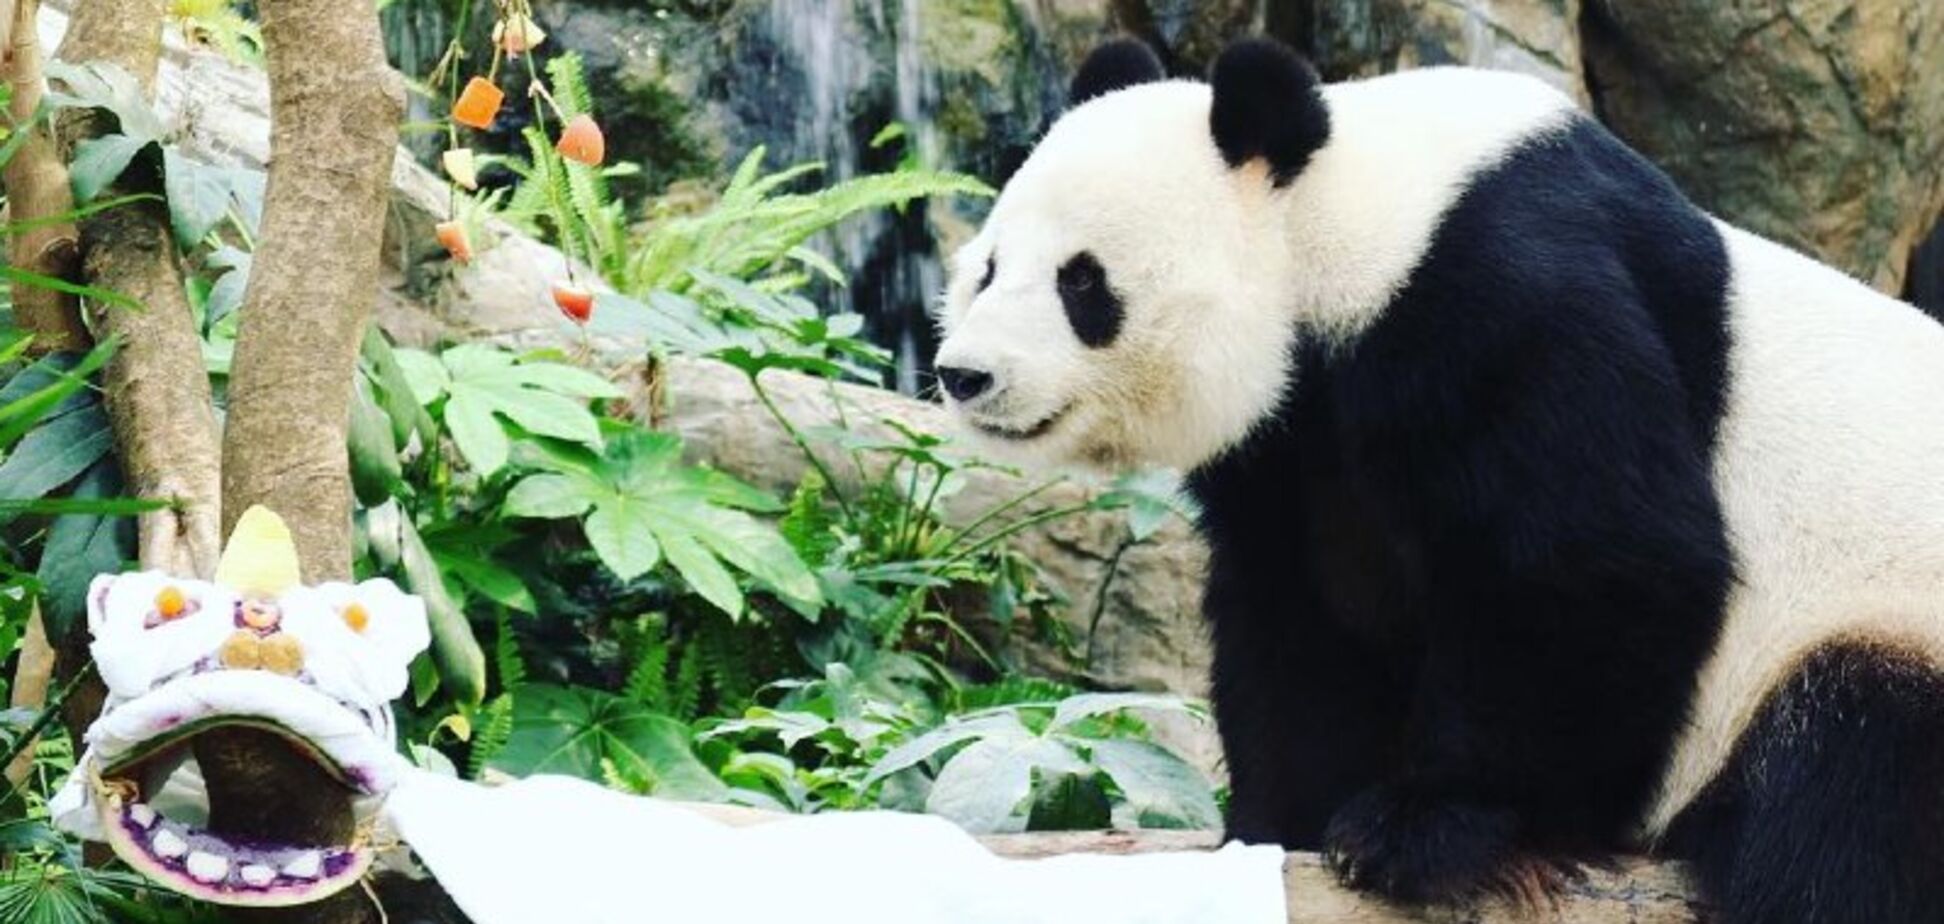 Как коронавирус влияет на природу: в зоопарке Гонконга впервые за 10 лет начали размножаться панды